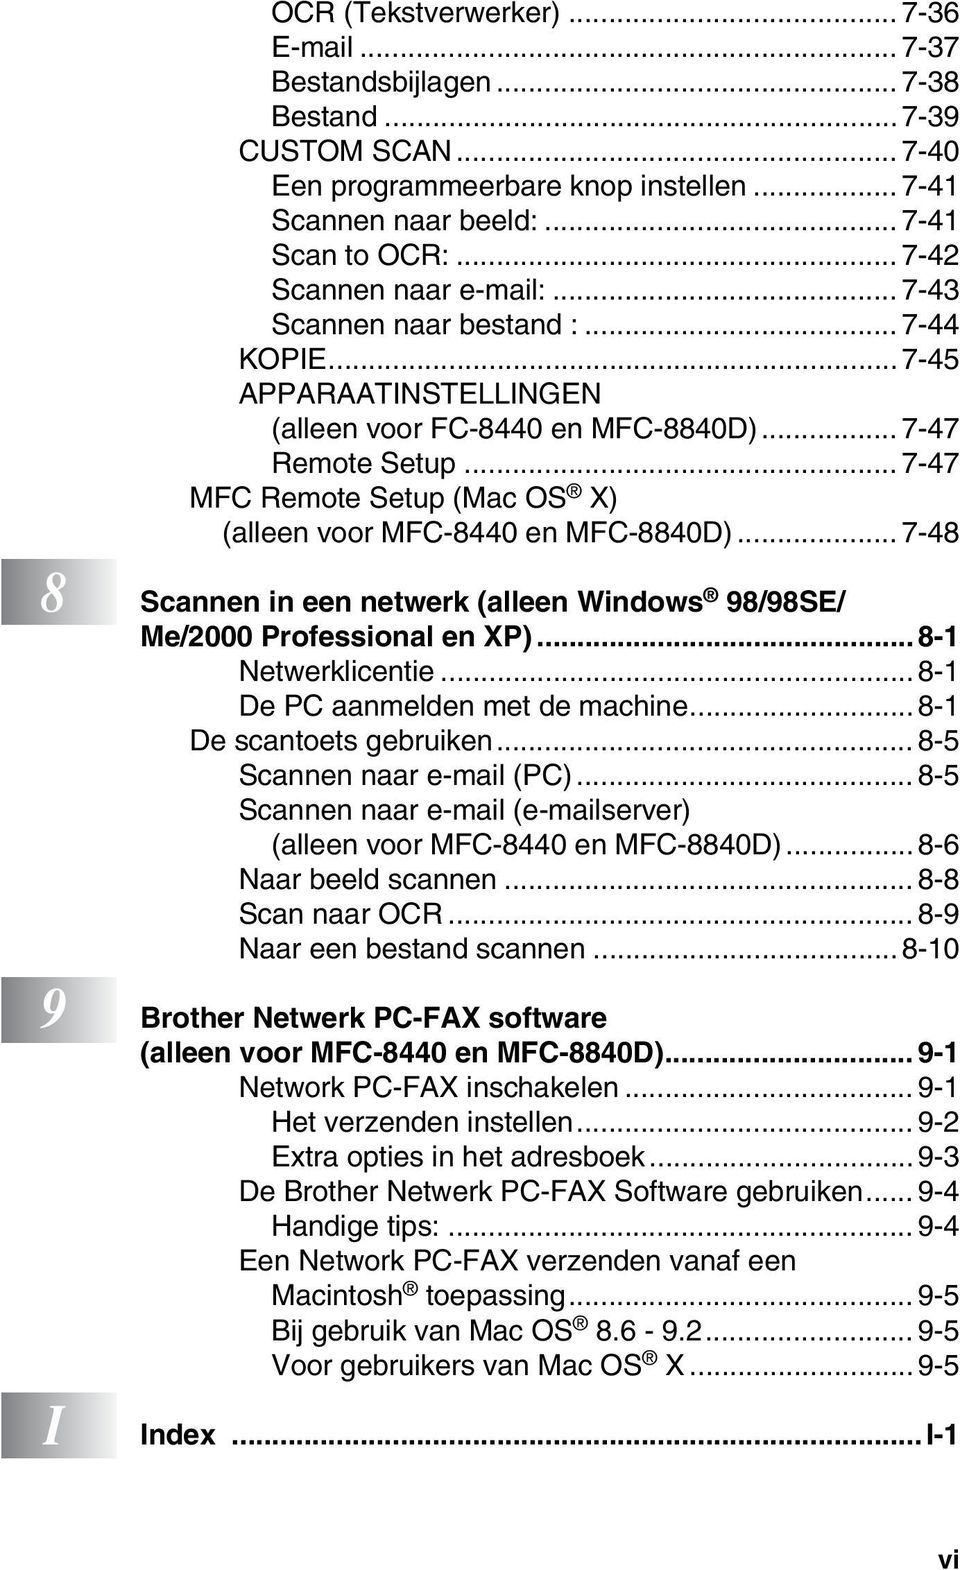 .. 7-47 MFC Remote Setup (Mac OS X) (alleen voor MFC-8440 en MFC-8840D)... 7-48 8 Scannen in een netwerk (alleen Windows 98/98SE/ Me/2000 Professional en XP)... 8-1 Netwerklicentie.